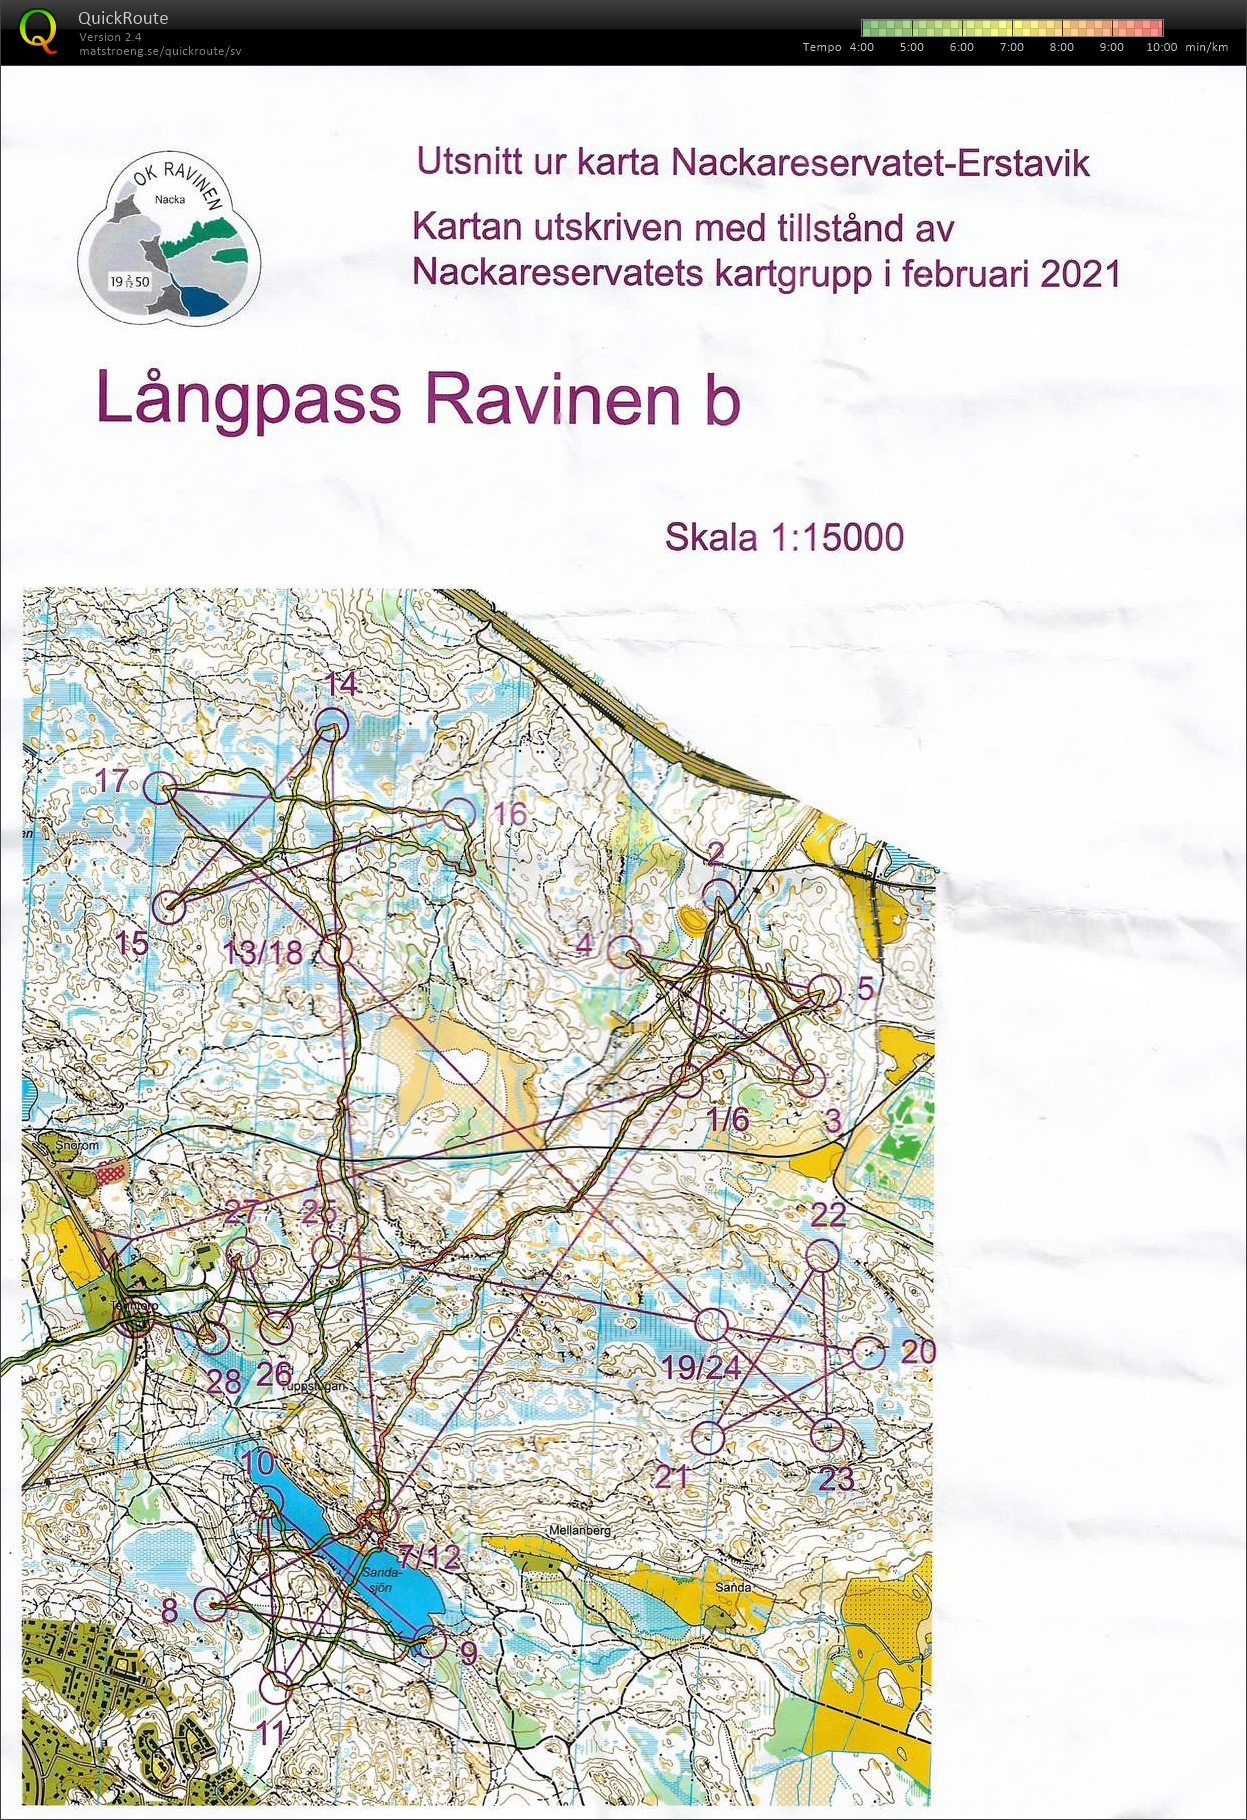 Långpass (20-02-2021)